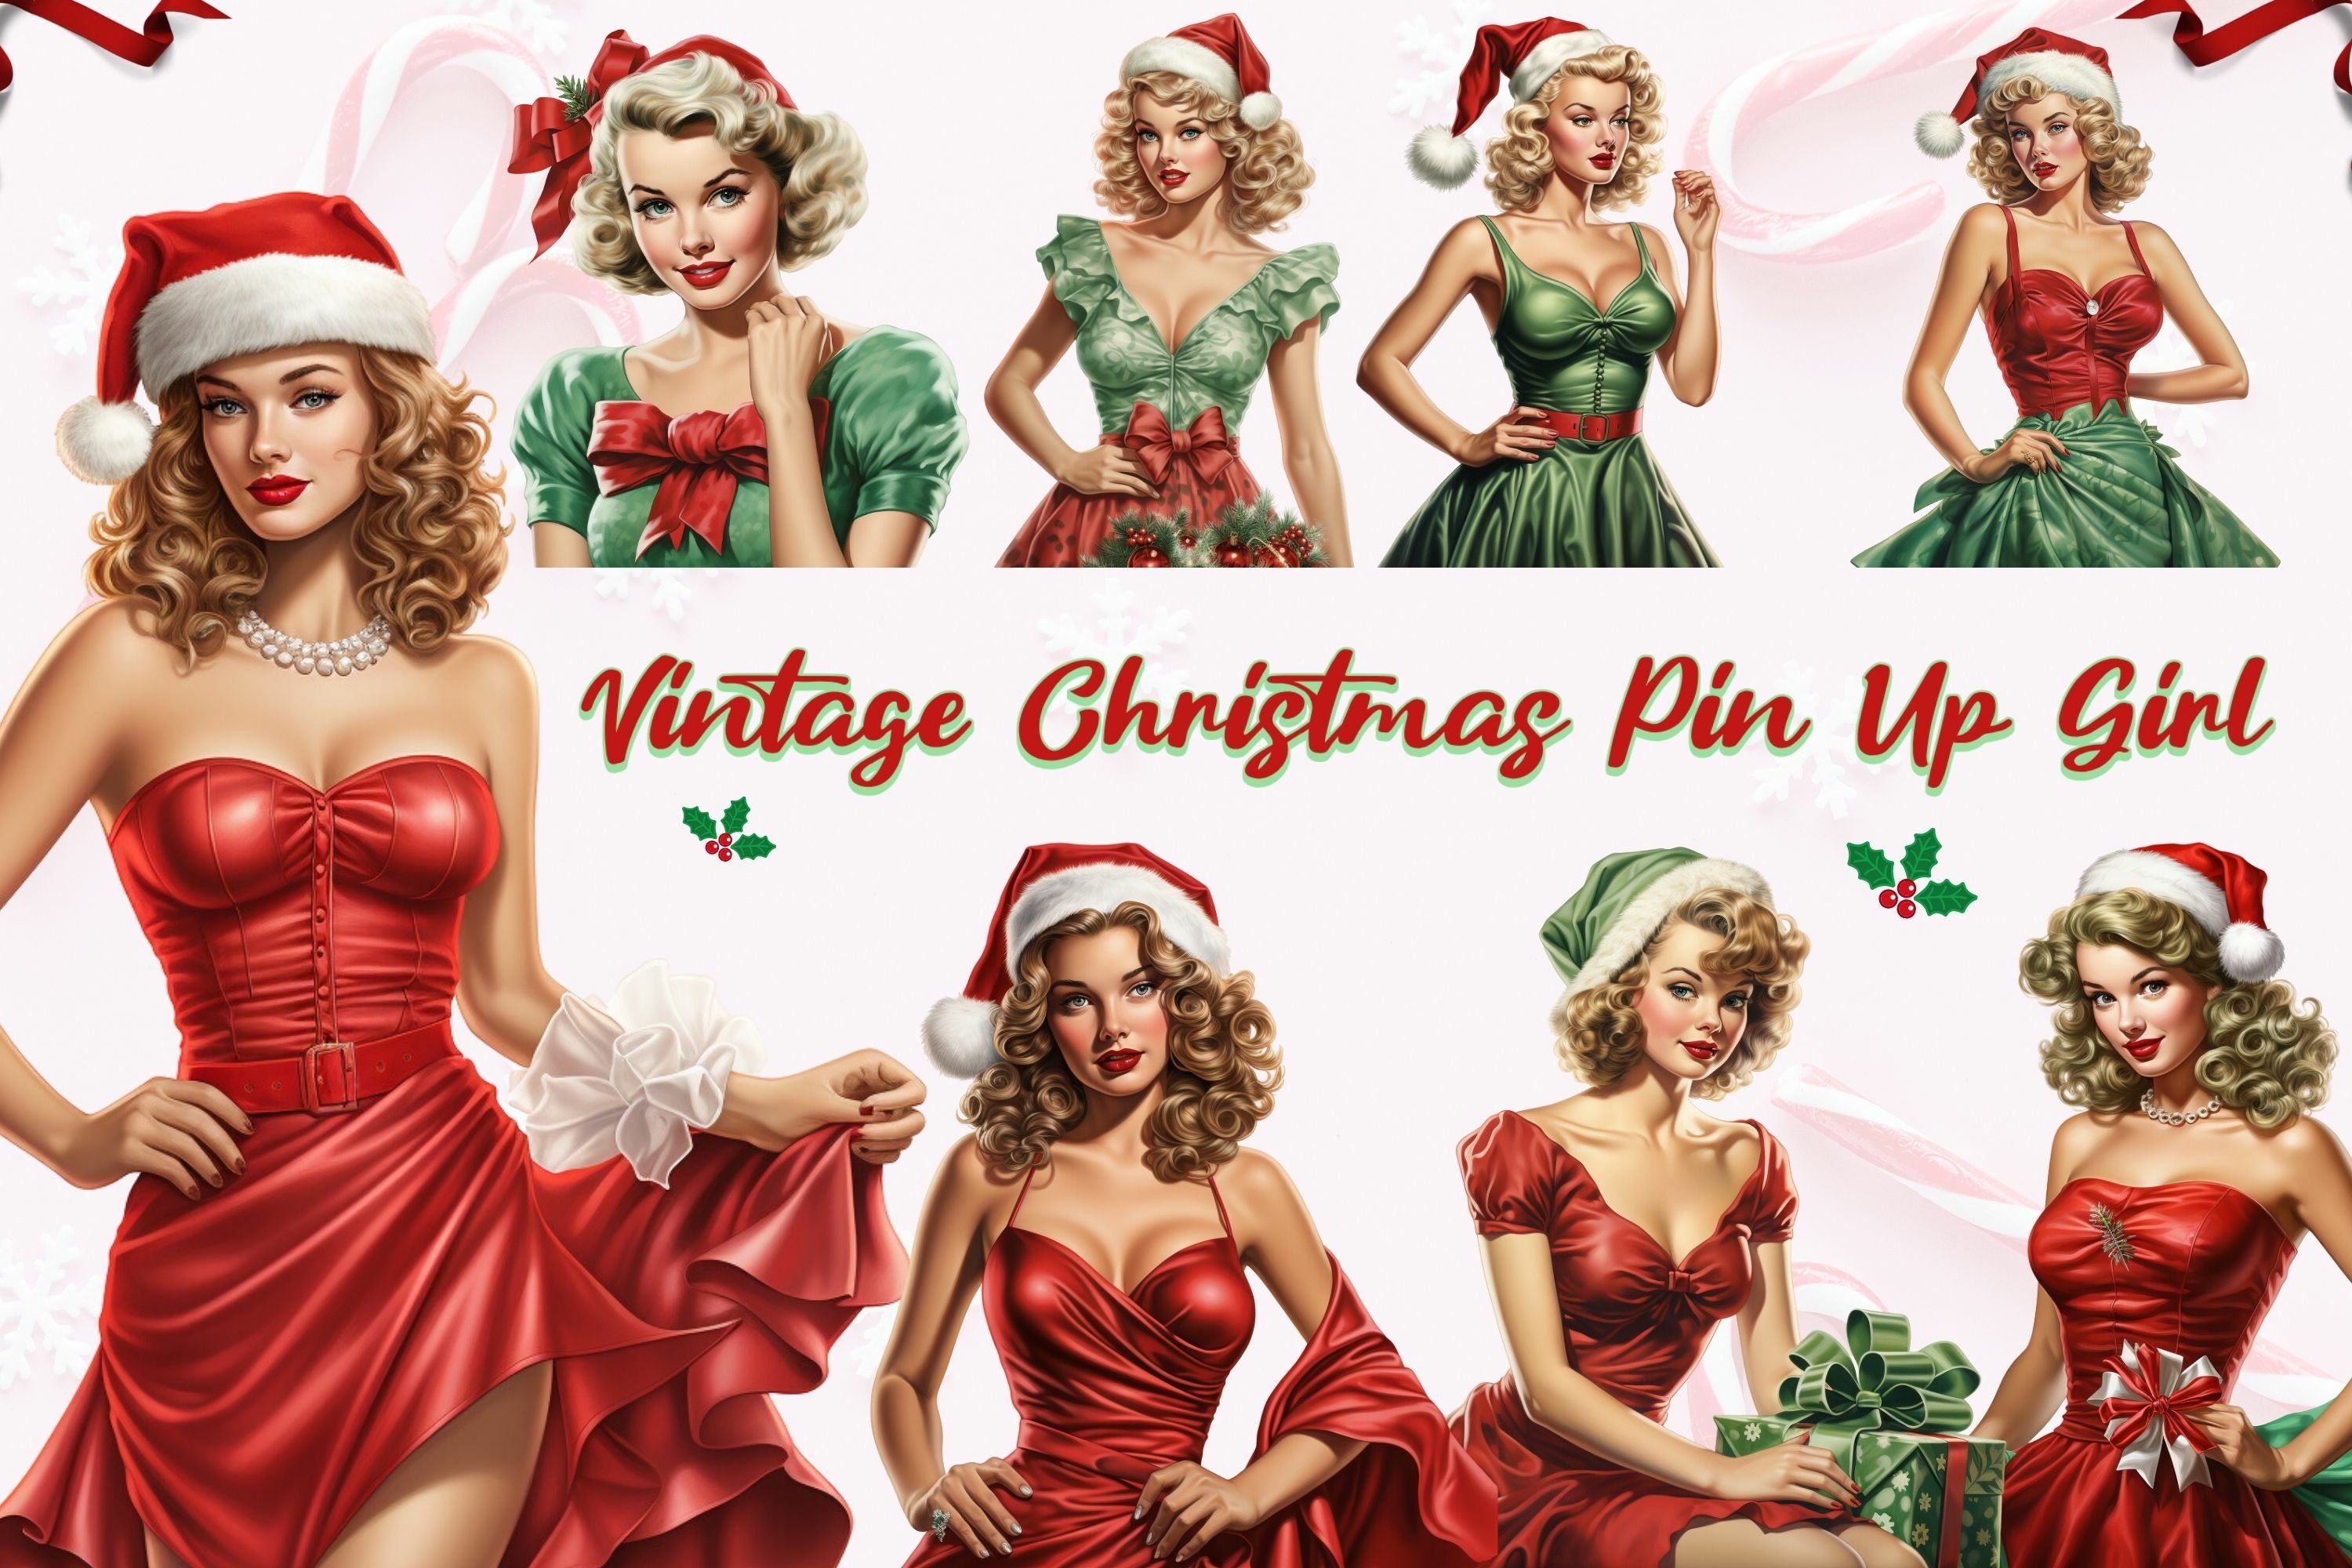 ashlee molnar add vintage christmas pin up girl images photo